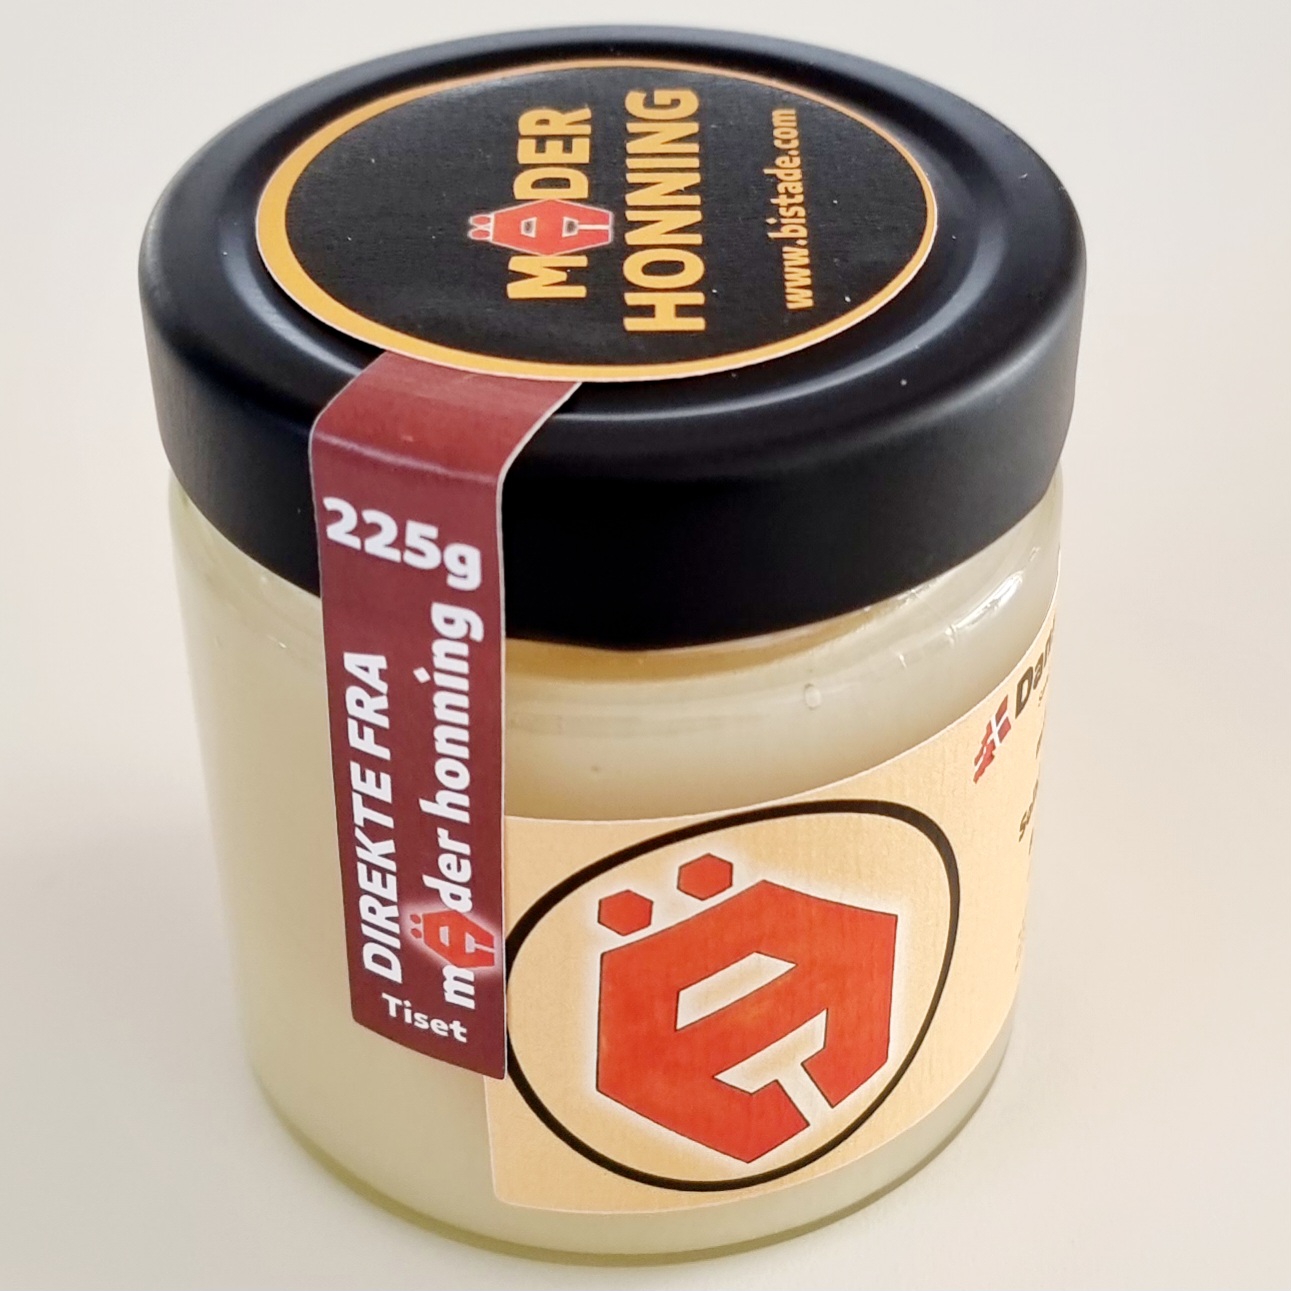 Dansk honning avlet i egen bigård. Mäder Honning 225g Forårshonning fra Tiset